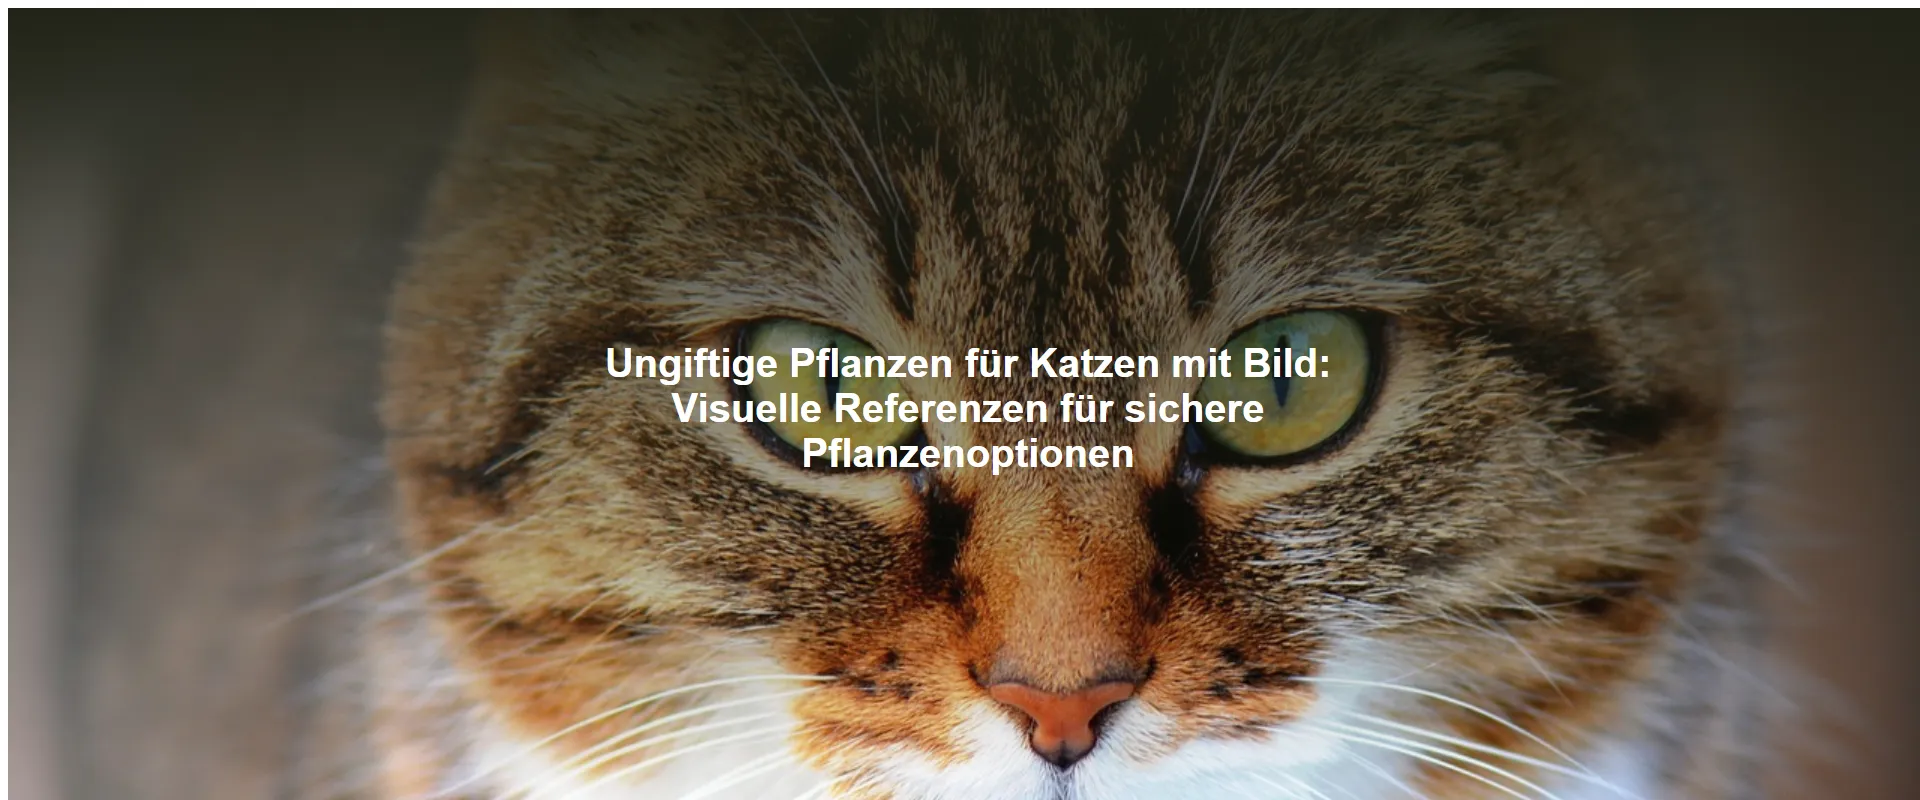 Ungiftige Pflanzen für Katzen mit Bild – Visuelle Referenzen für sichere Pflanzenoptionen